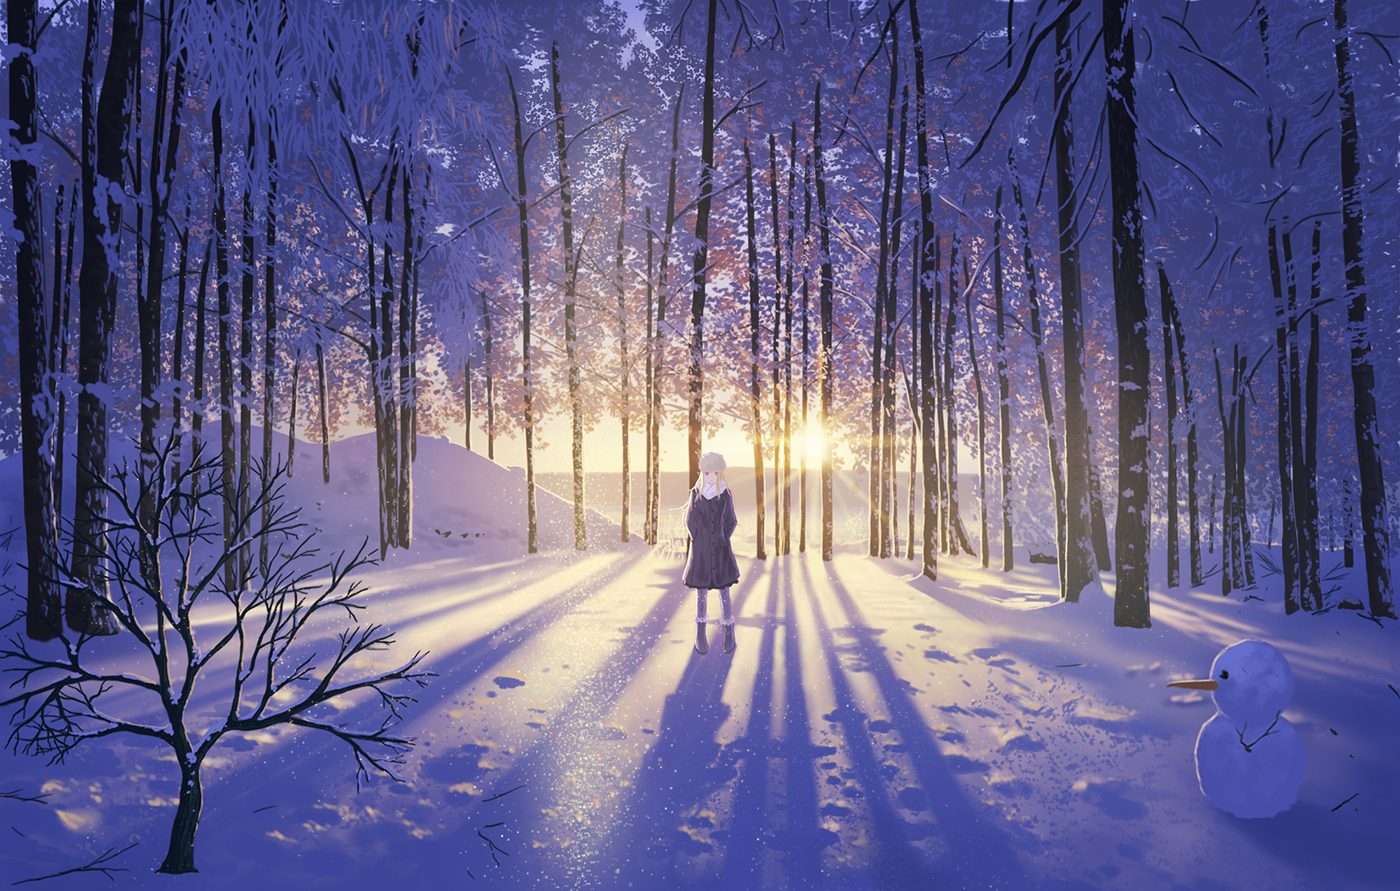 1 二次風景画像 5枚 自然 雪山 冬 イラスト 壁紙 風景と少女